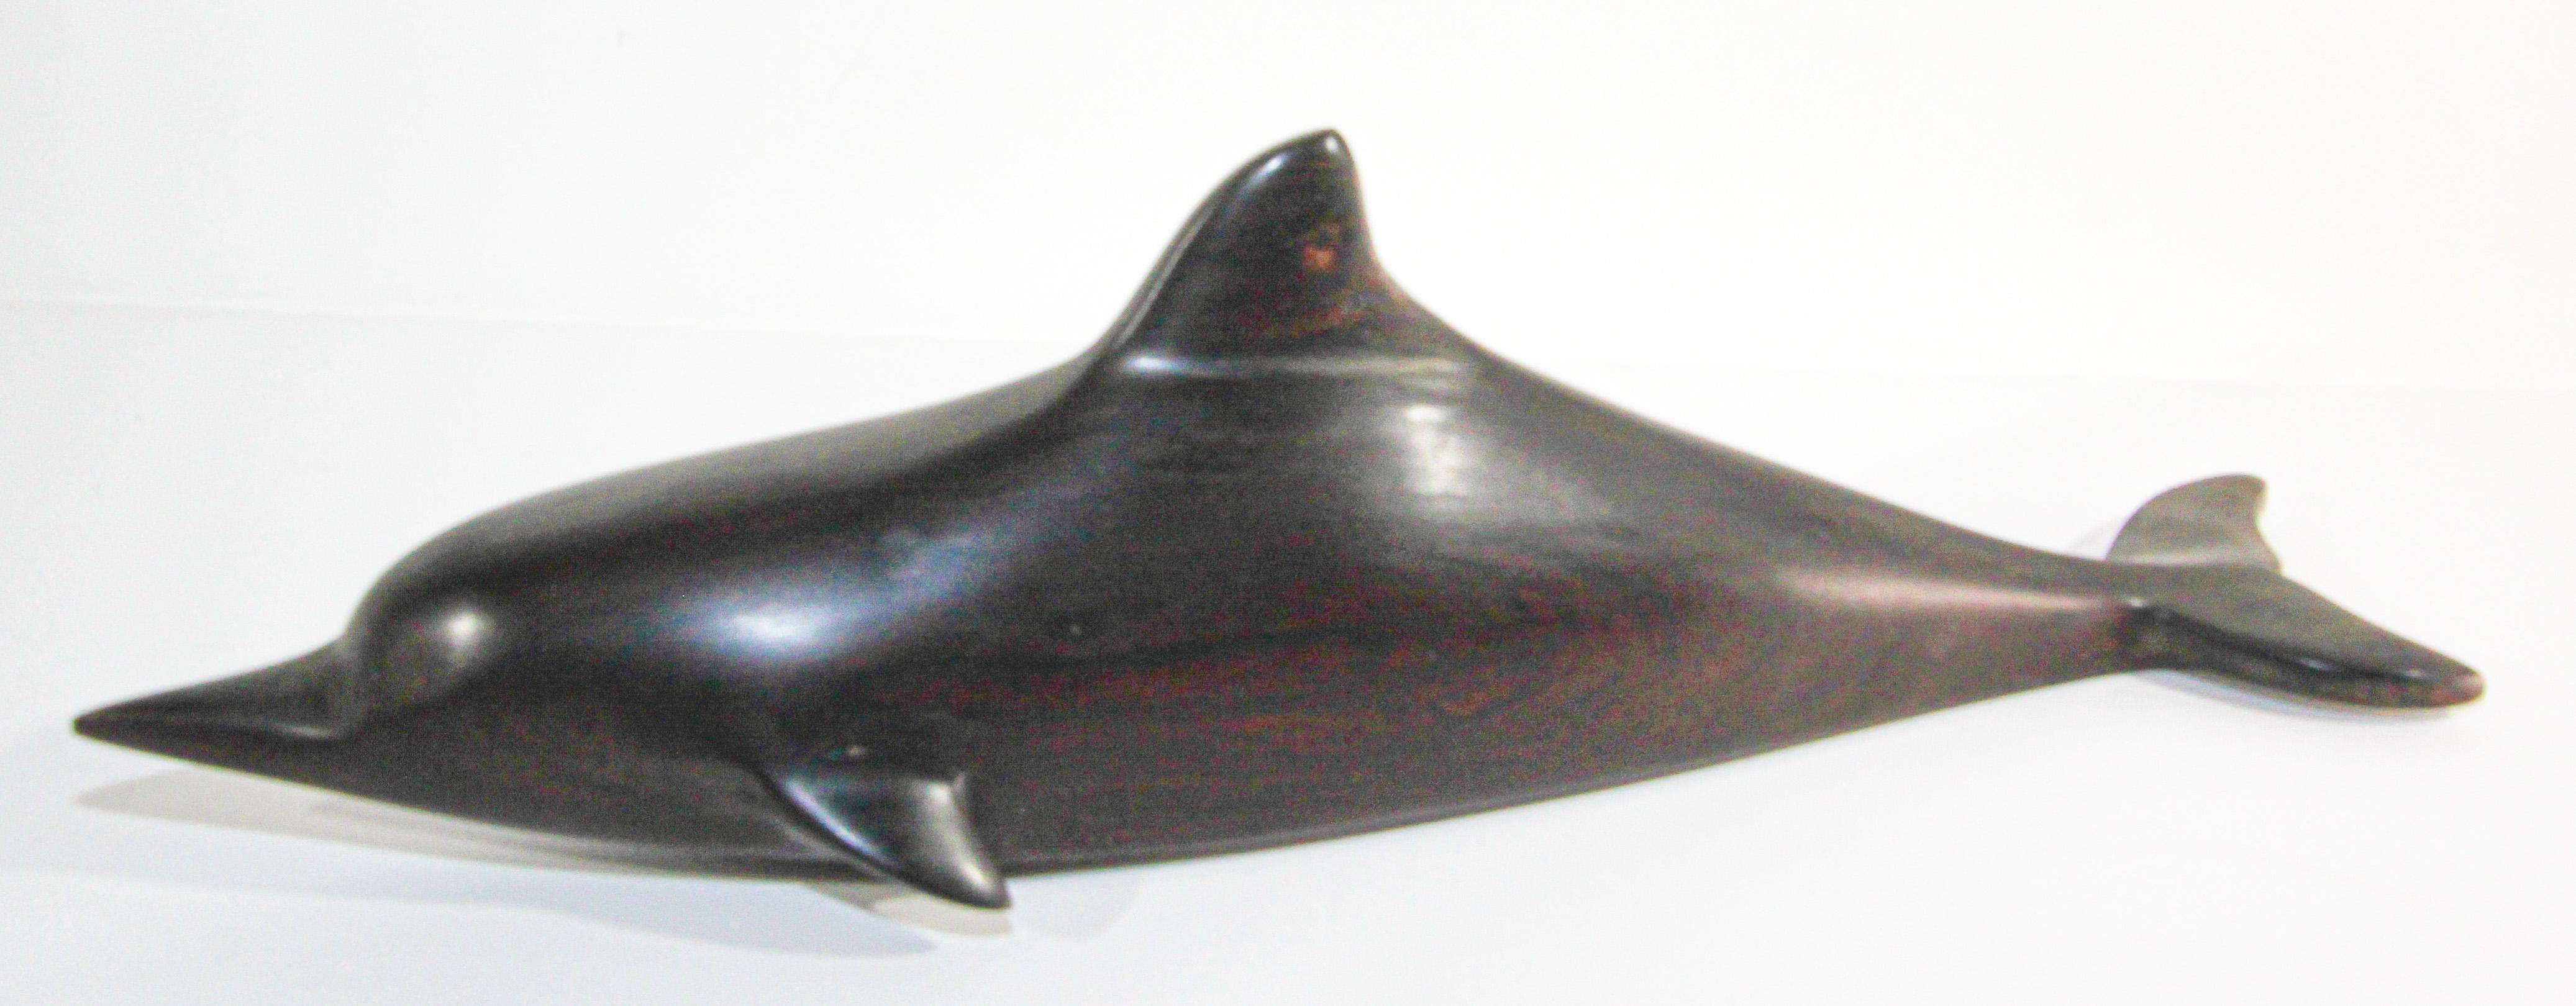 Sculpture brésilienne vintage en bois de fer sculpté à la main d'une baleine et d'un requin.
Sculpture brésilienne sculptée à la main et fabriquée à la main avec des détails étonnants à partir de l'un des bois de fer naturels les plus durs de la